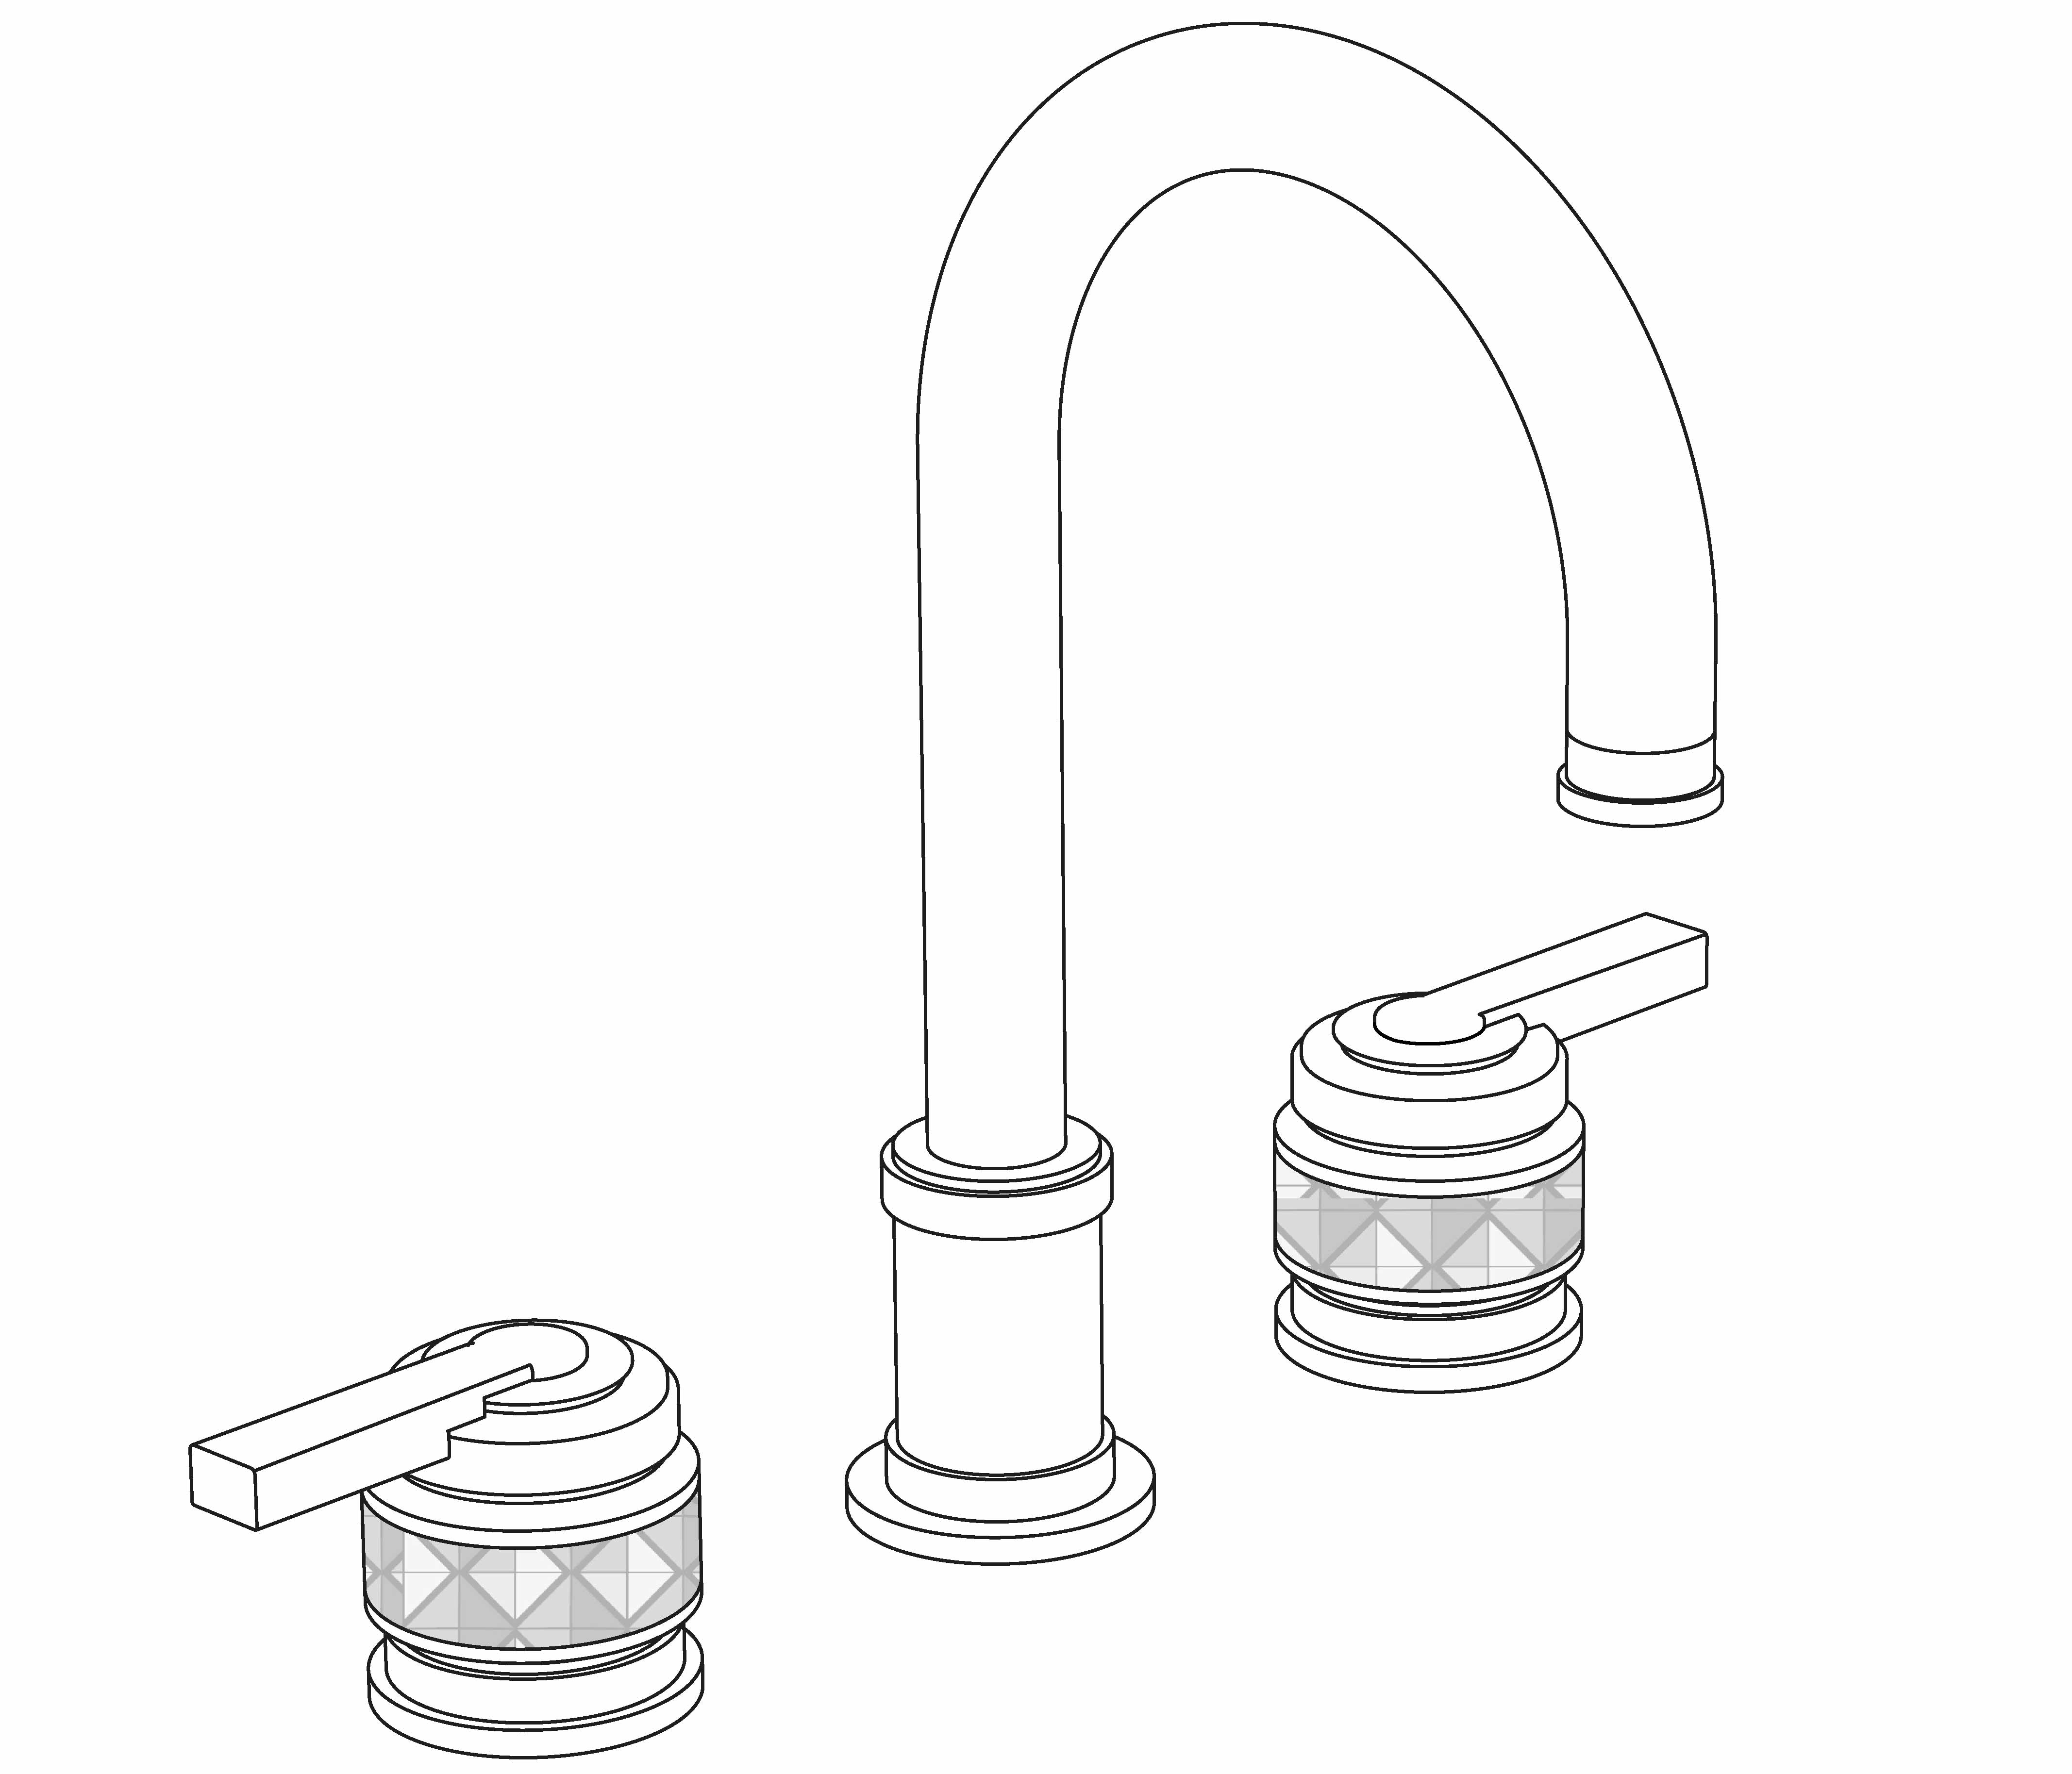 S90-1302 3-hole basin mixer